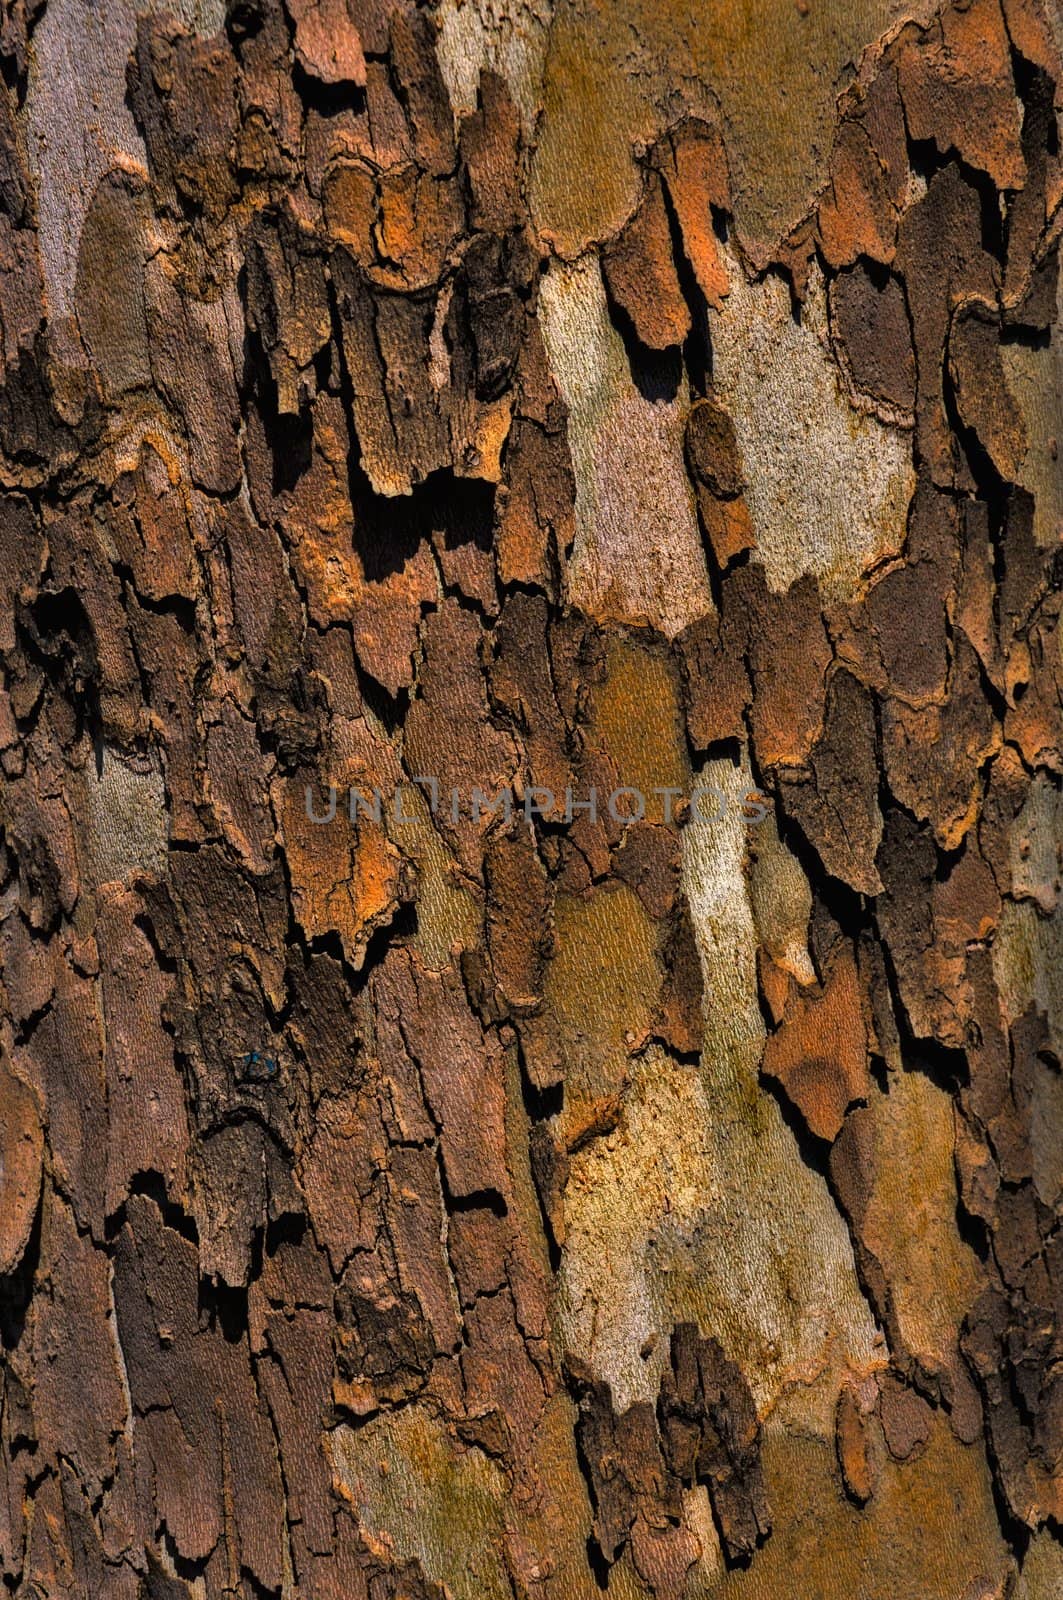 sycamore bark by benjaminlion